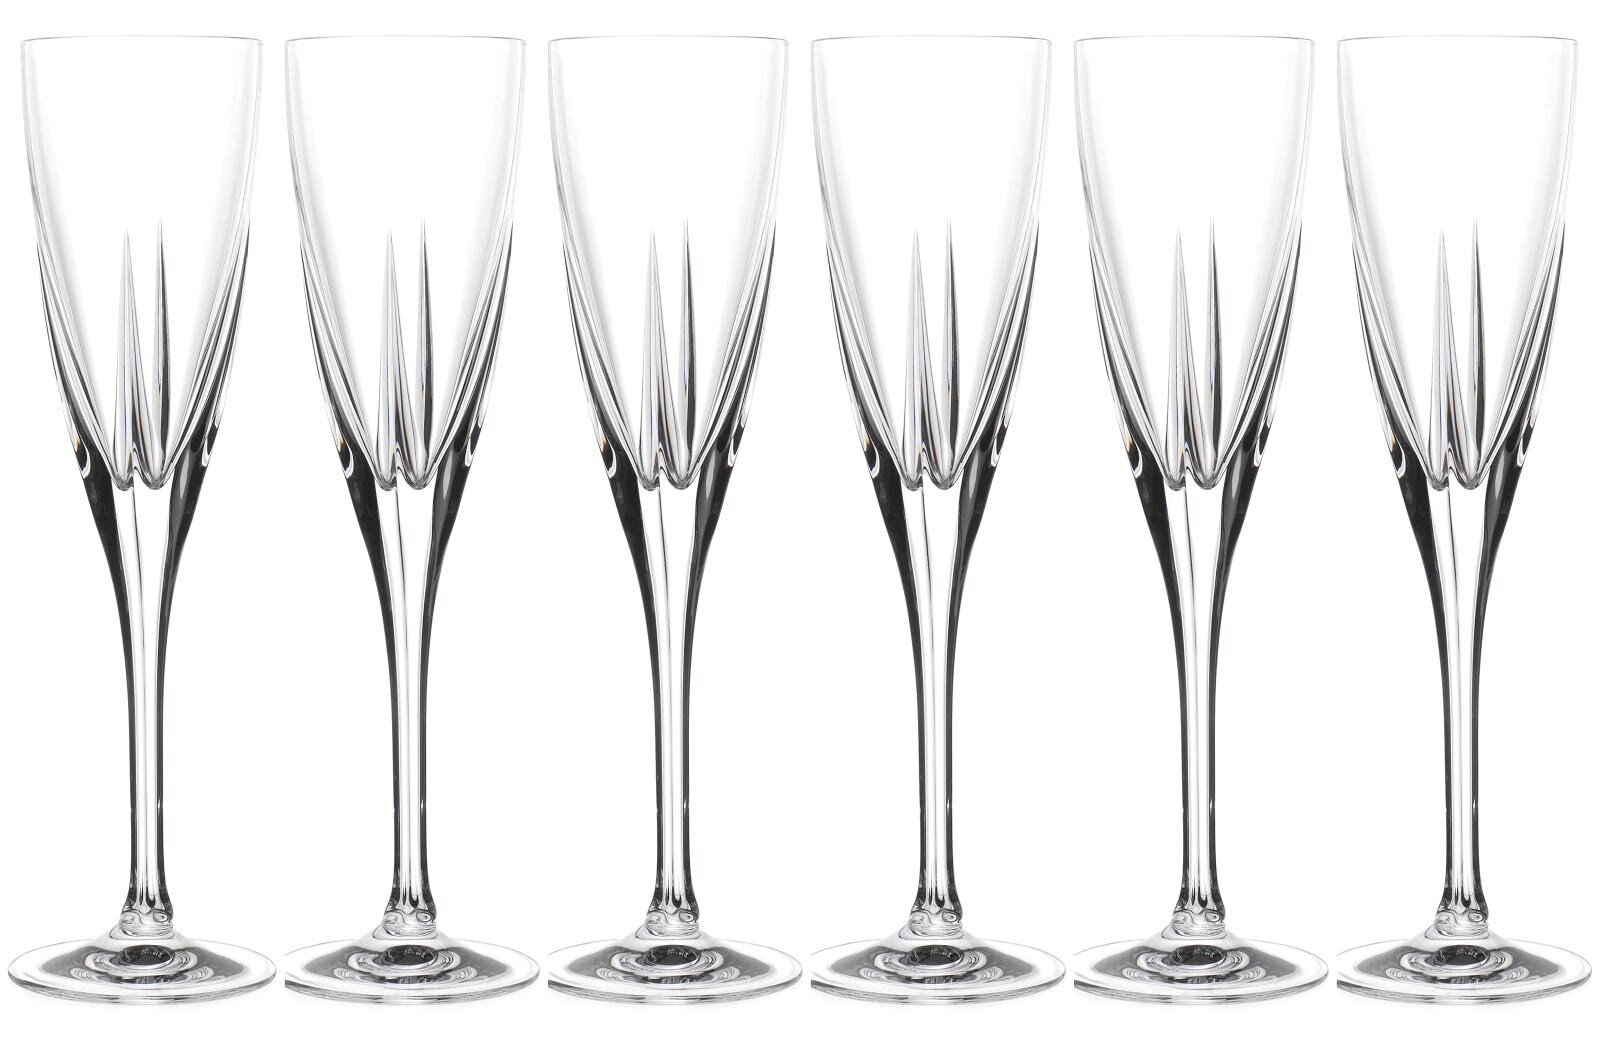 Crystalline Champagne Flutes, Set of 2